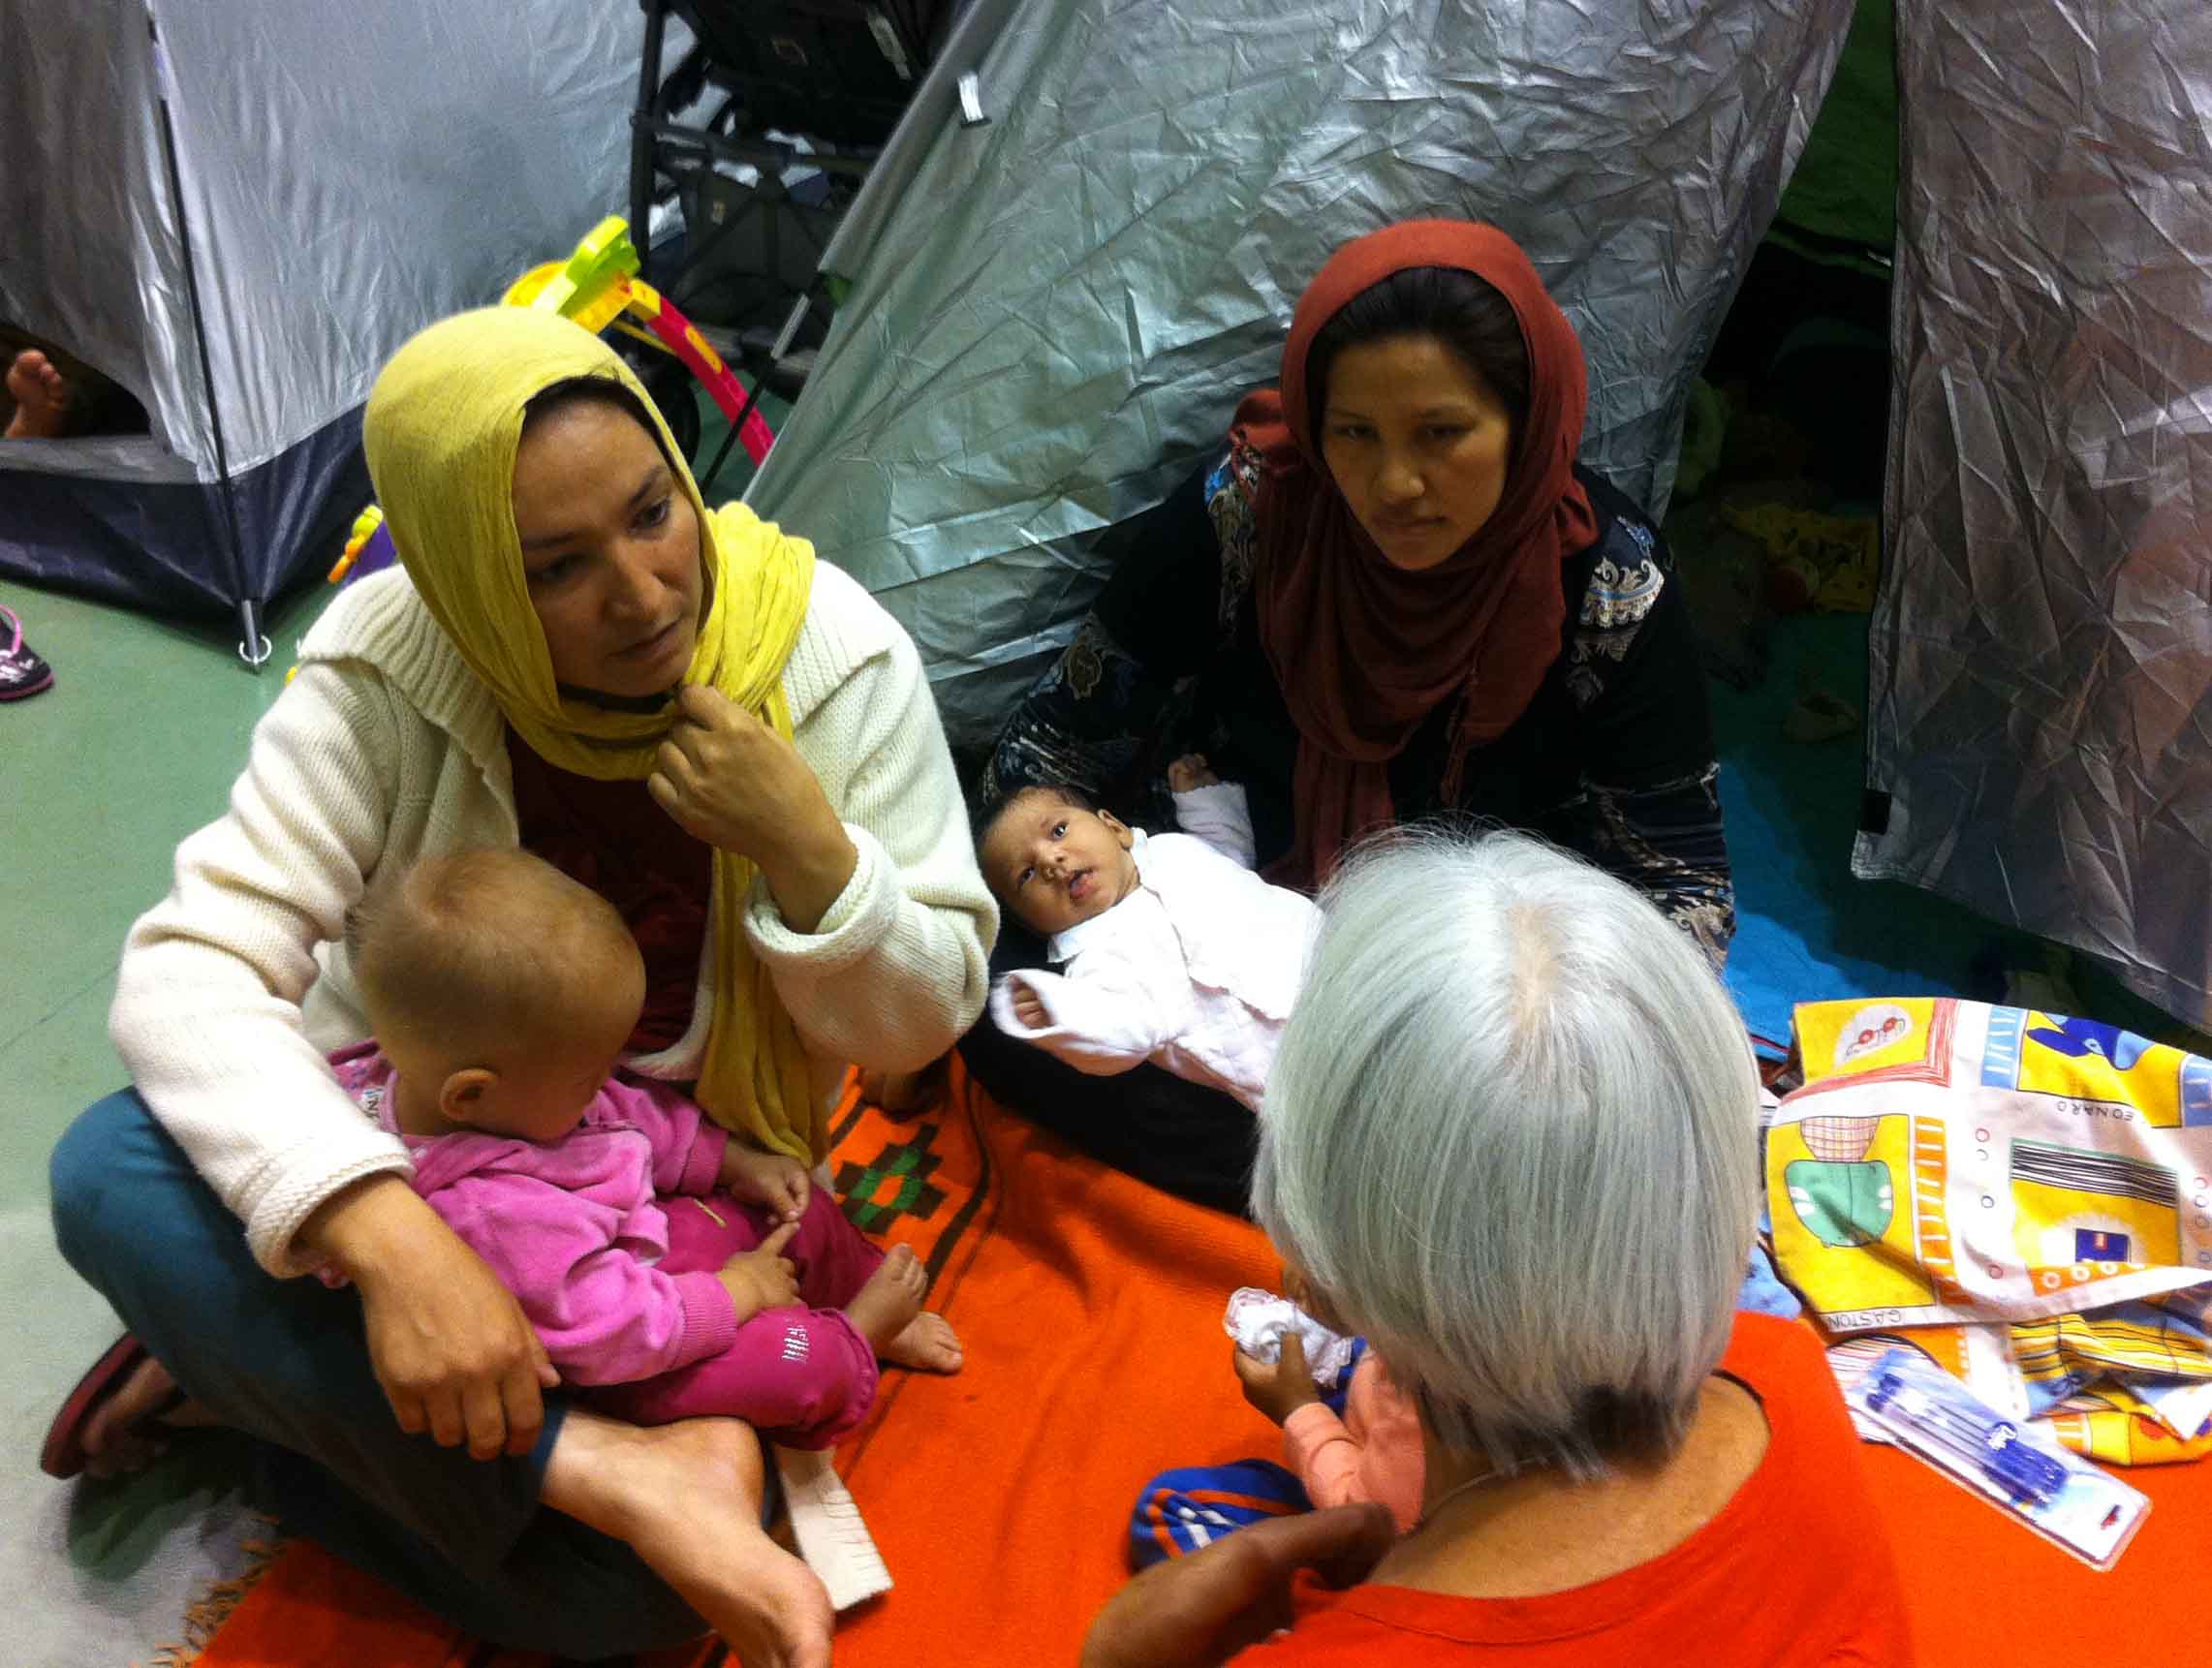 Î‘Ï€Î¿Ï„Î­Î»ÎµÏƒÎ¼Î± ÎµÎ¹ÎºÏŒÎ½Î±Ï‚ Î³Î¹Î± amurtel greece for refugee mothers and babies